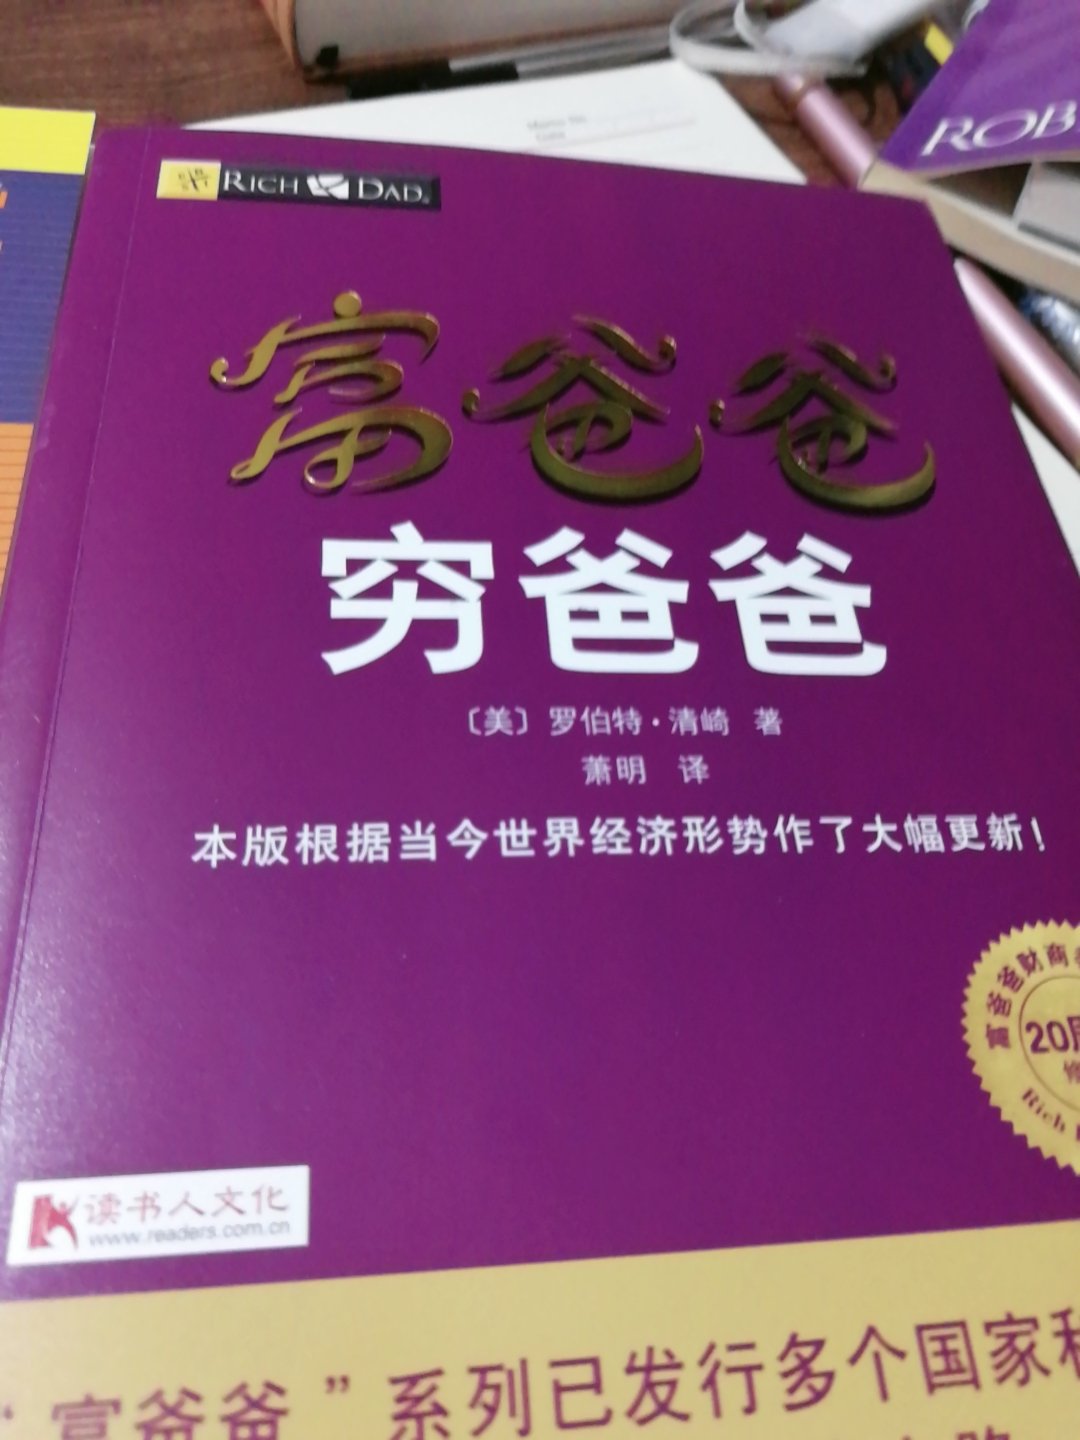 书很好，全新的，买了一本英文的和这本中文的，两本差别很大，更喜欢中文的。而且英文的还很贵